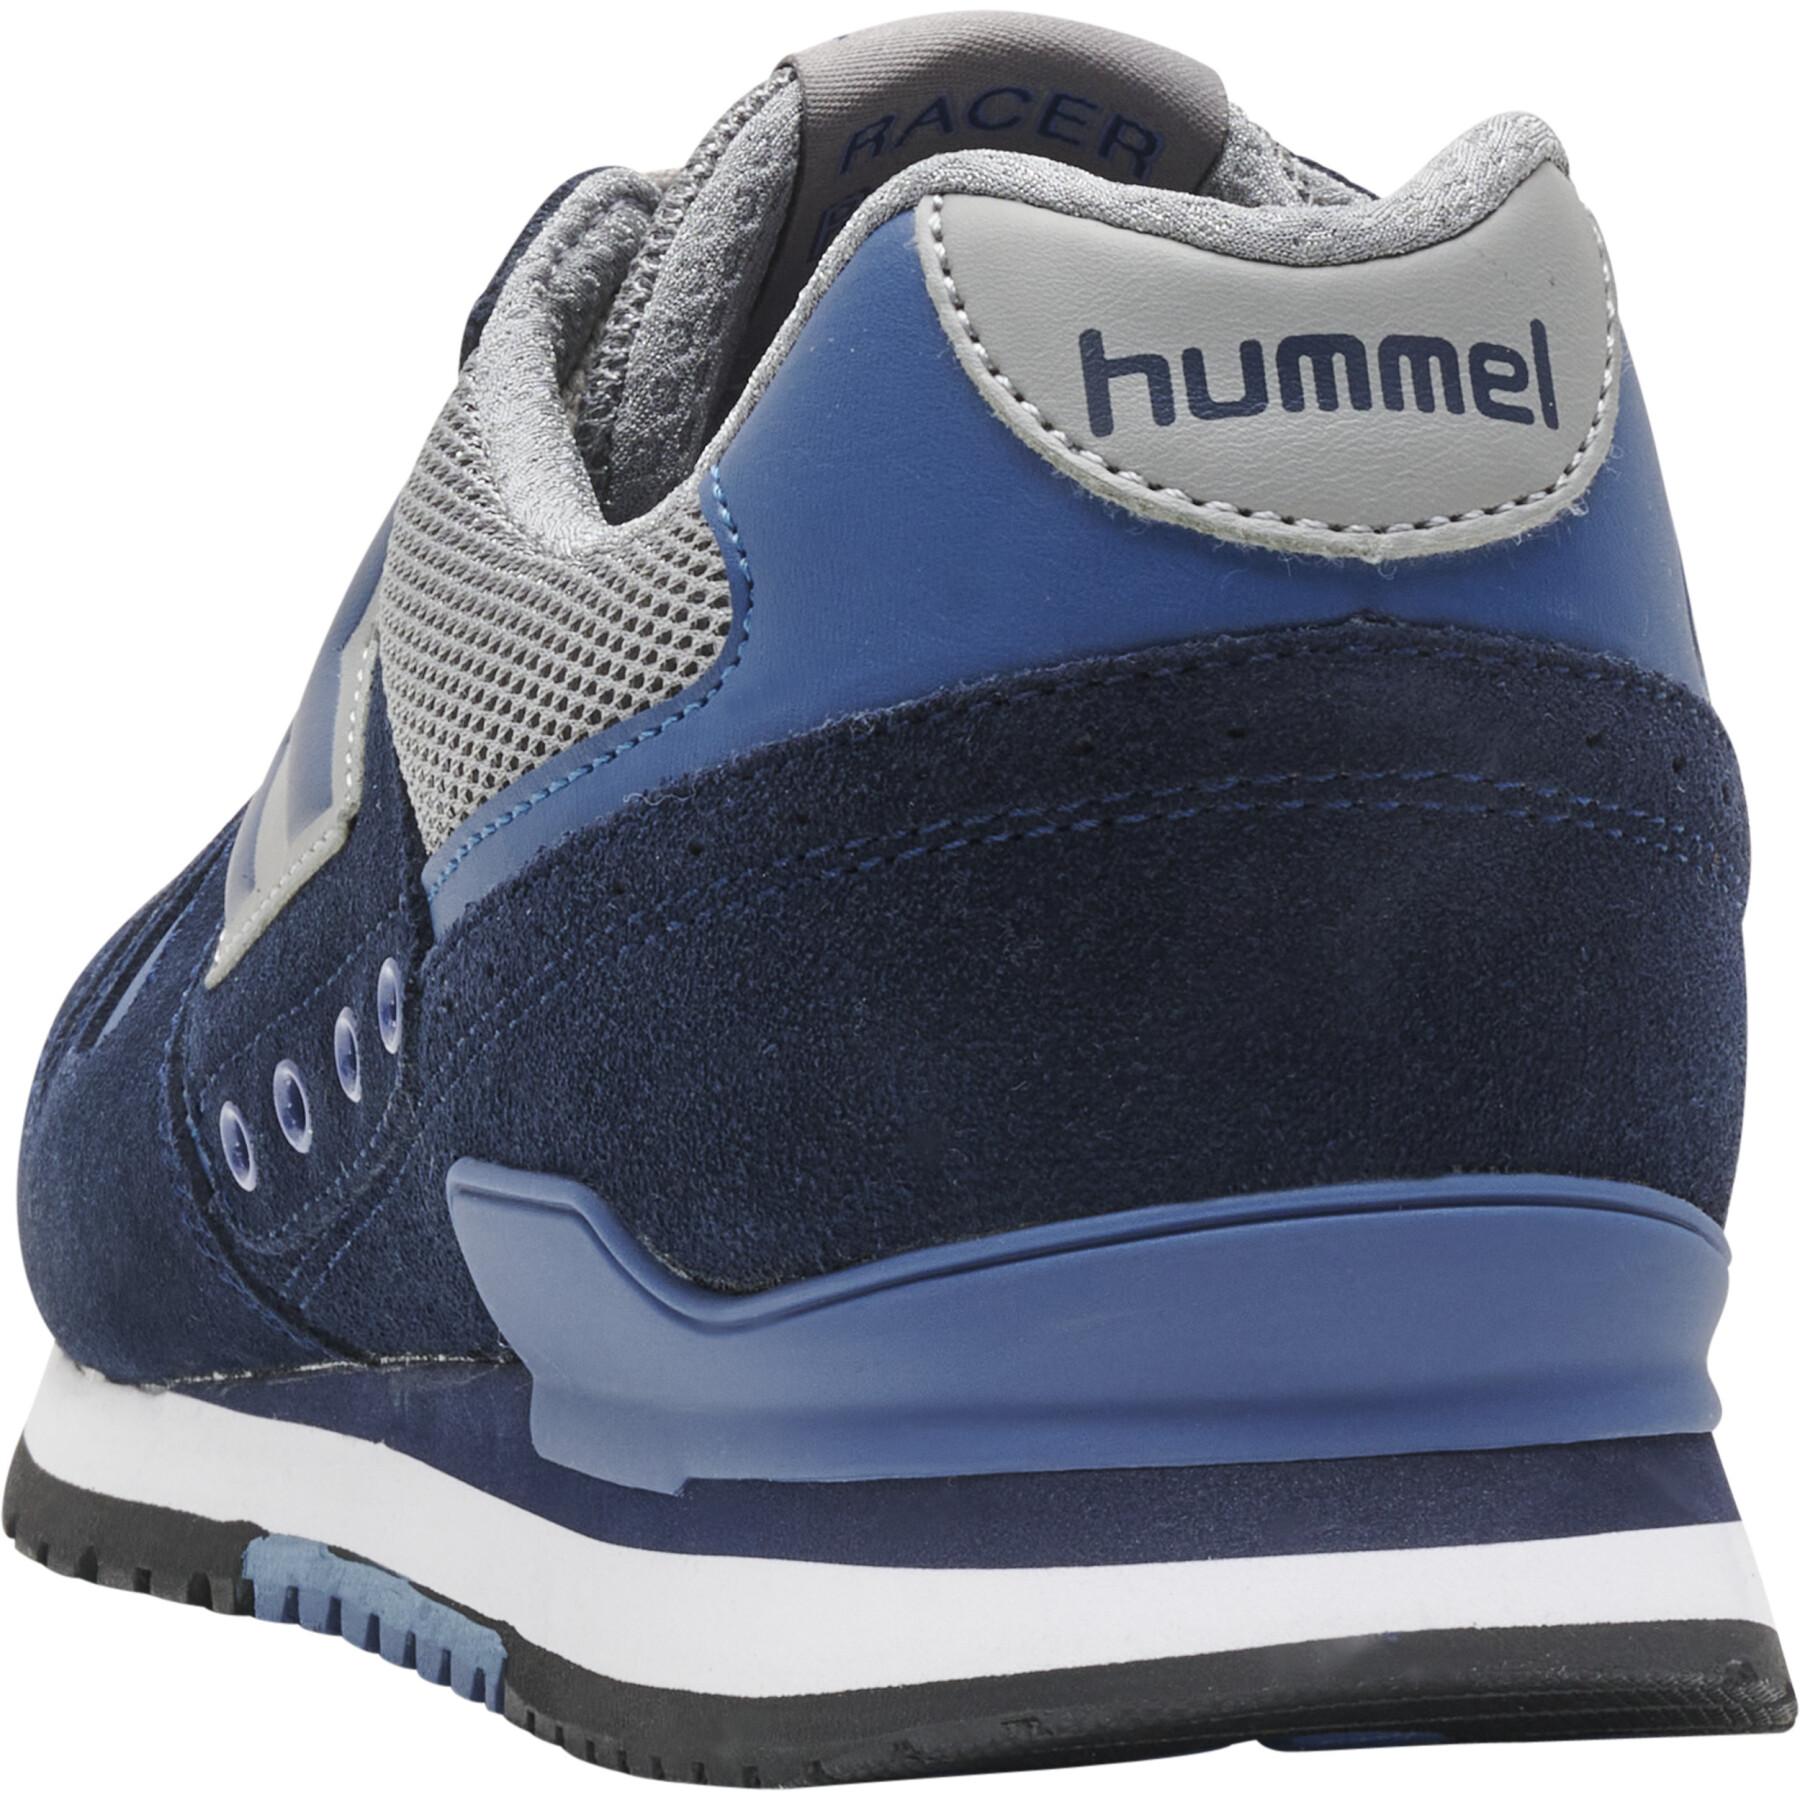 Suede sneakers Hummel Marathona